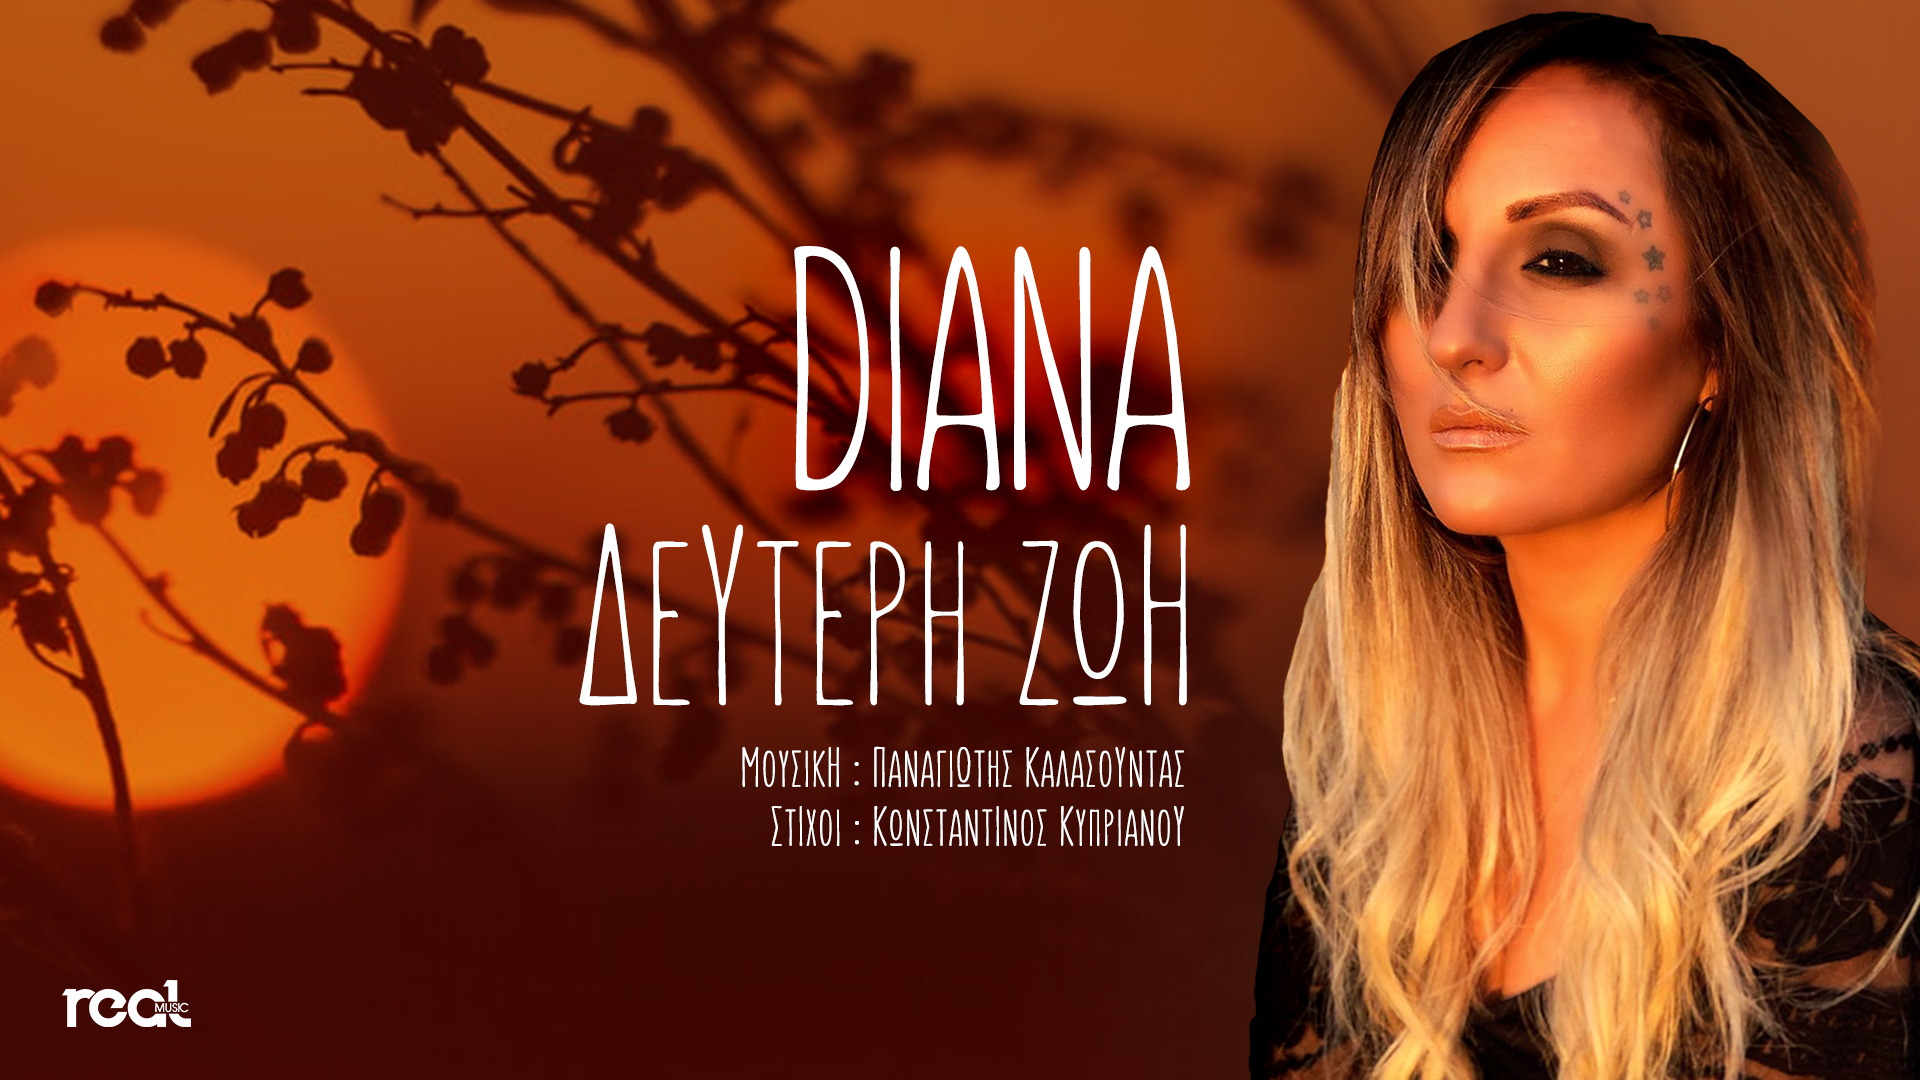 «Δεύτερη ζωή» ακούστε το νέο ζεϊμπέκικο της υπέροχης Diana που μόλις κυκλοφόρησε